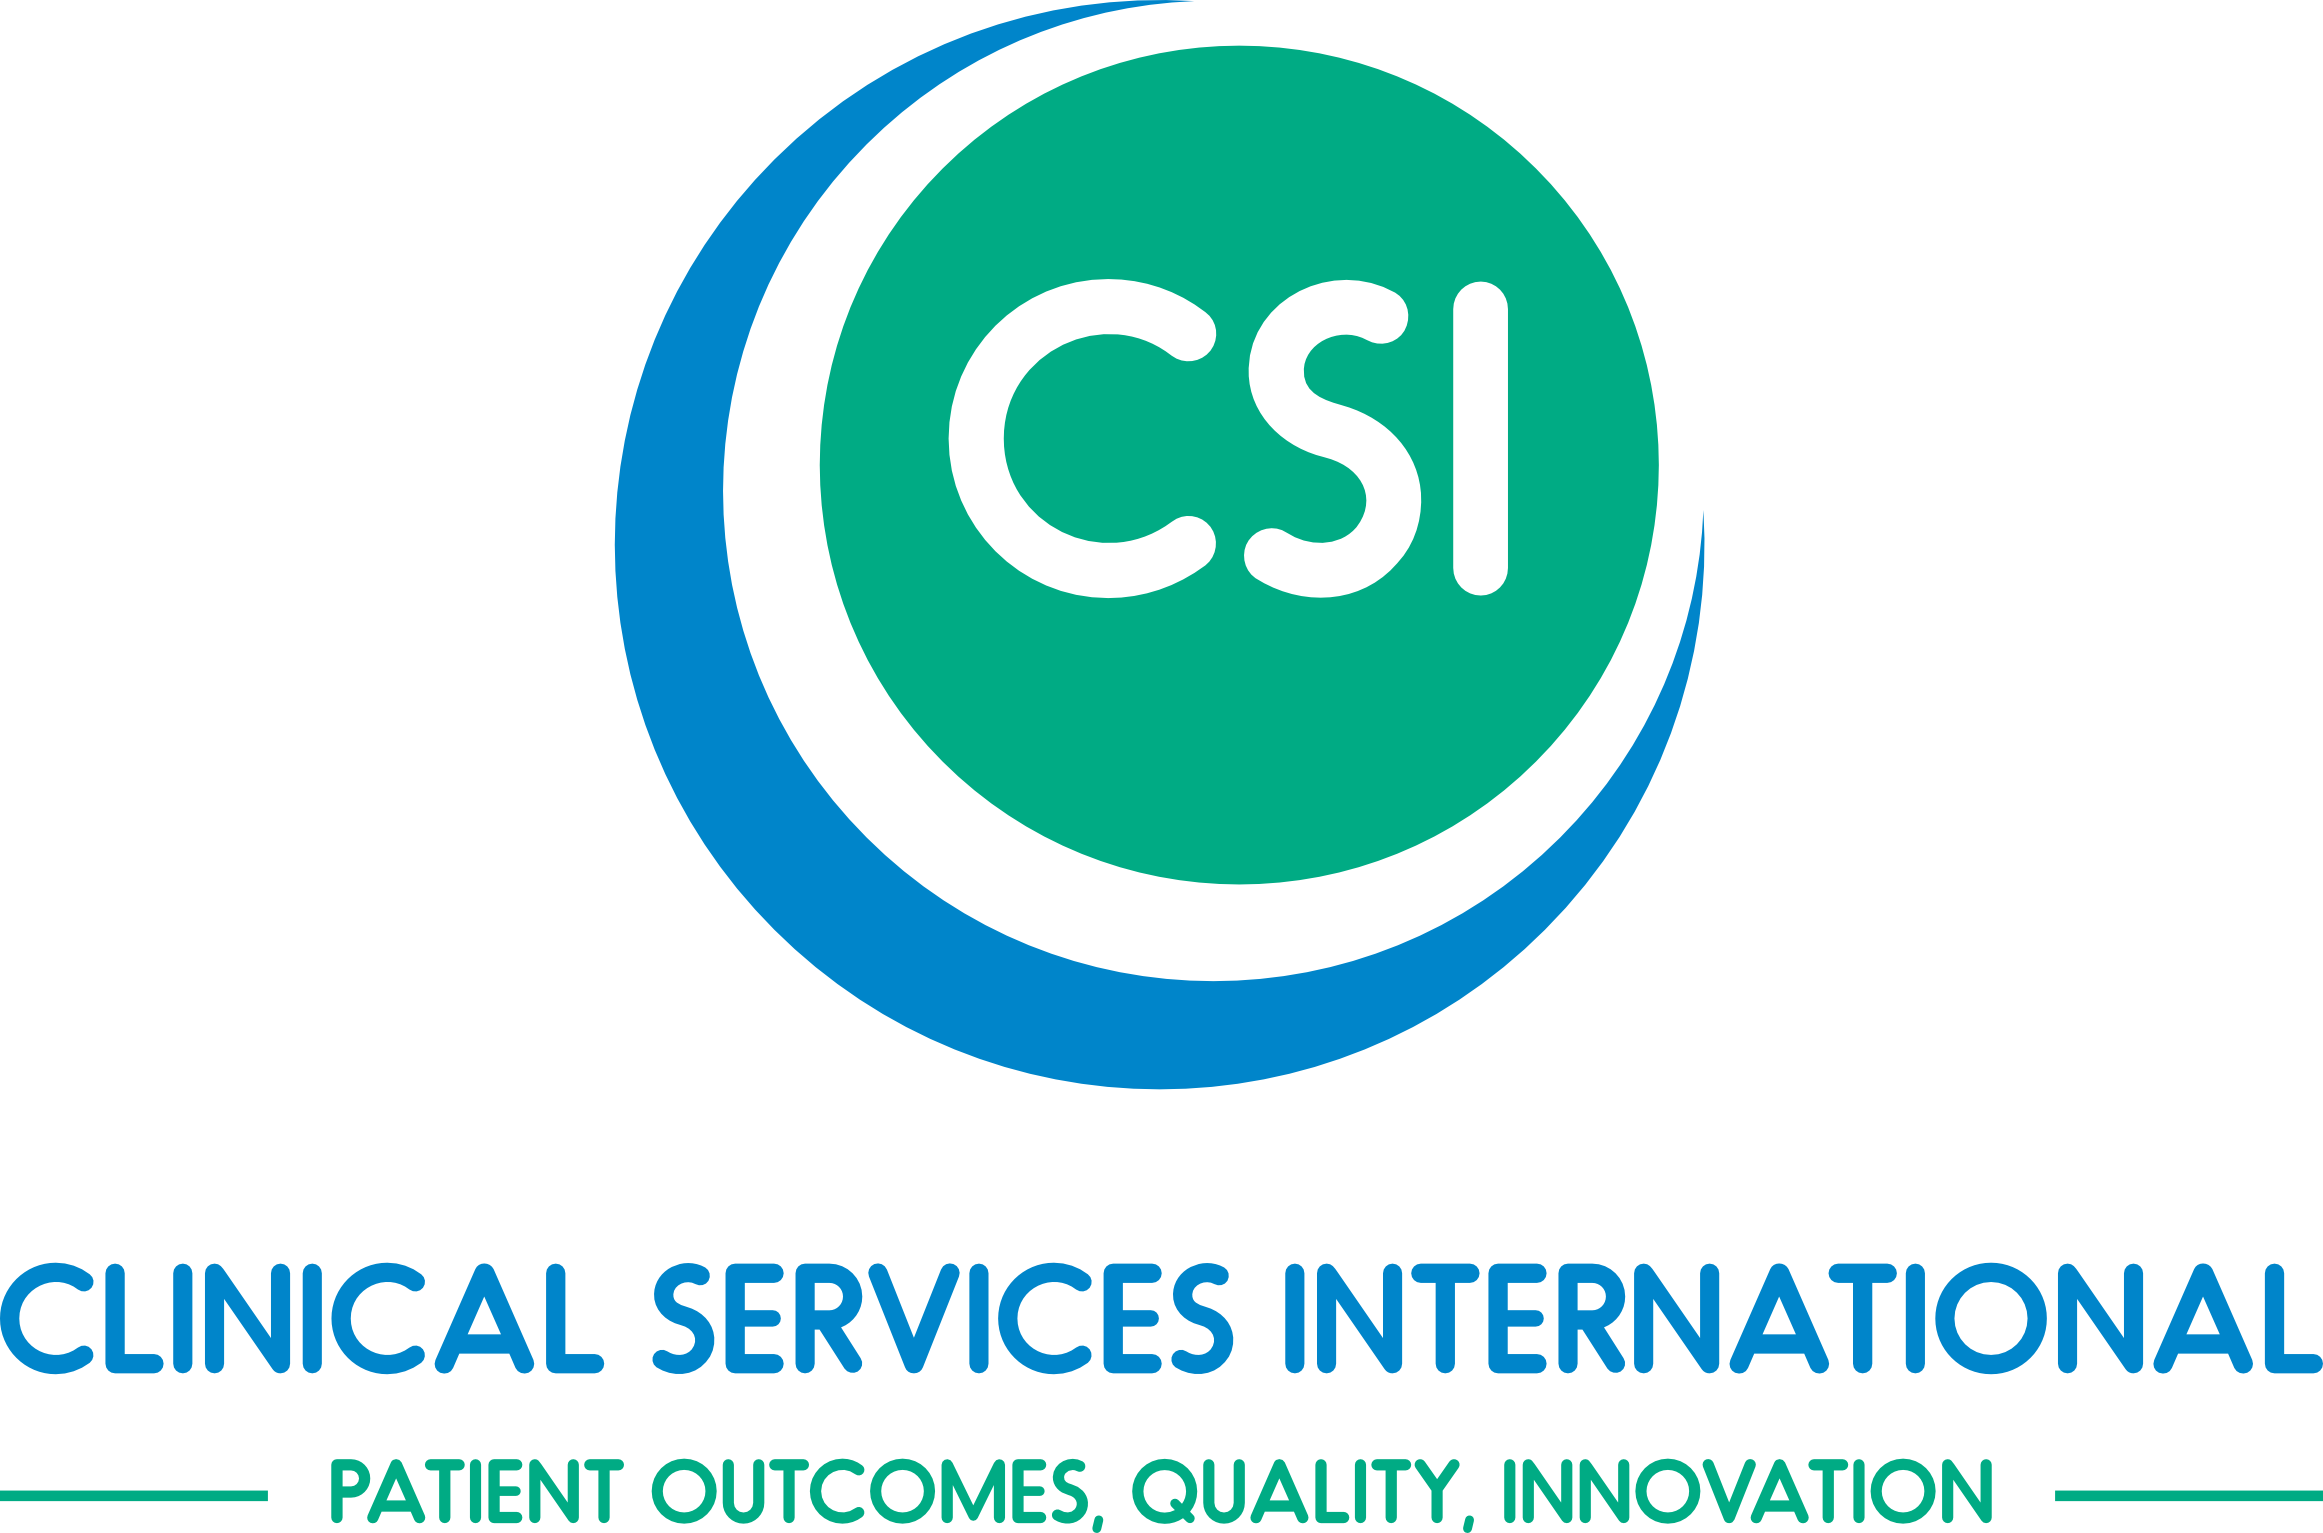 Visit: www.clinicalservices.eu